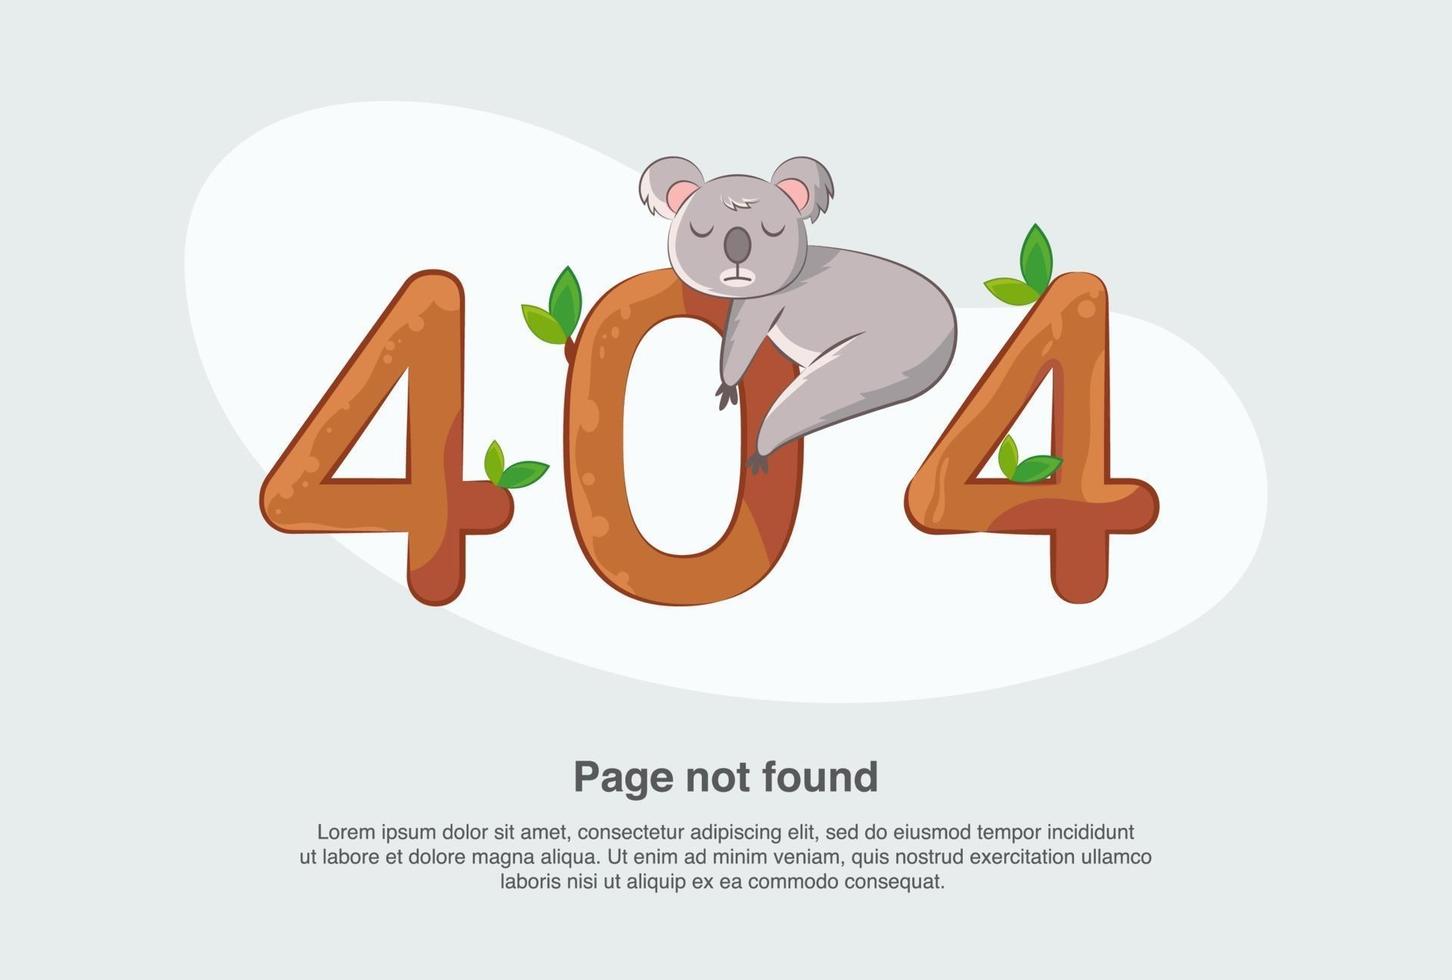 página de error 404 de advertencia de red de Internet o archivo no encontrado para la página web. vector